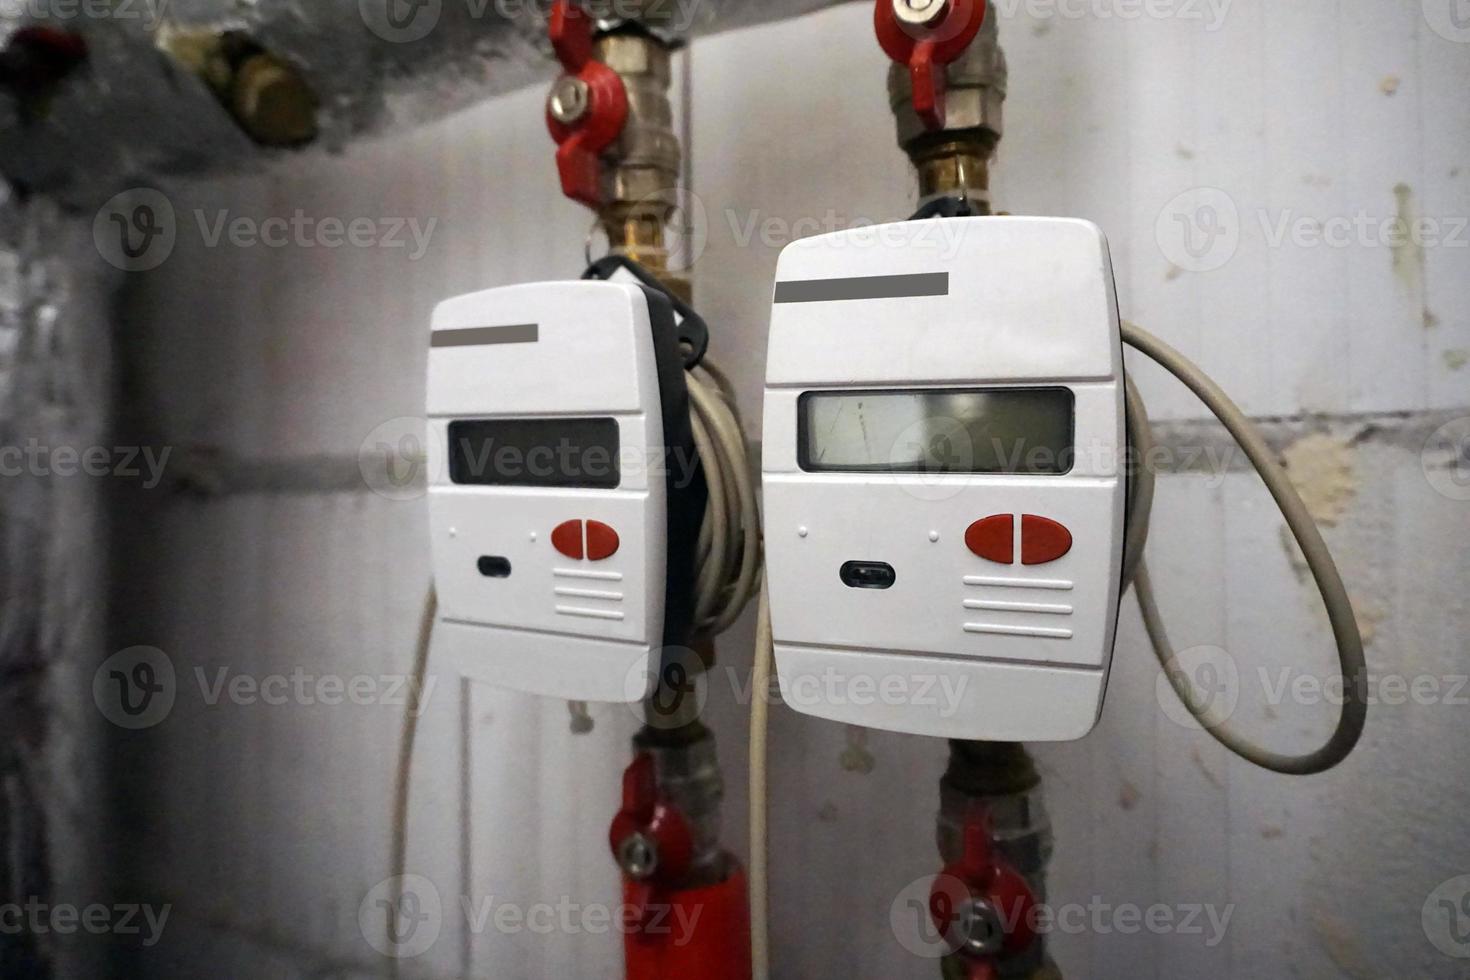 deux compteurs de chauffage central installés sur des conduites d'eau photo